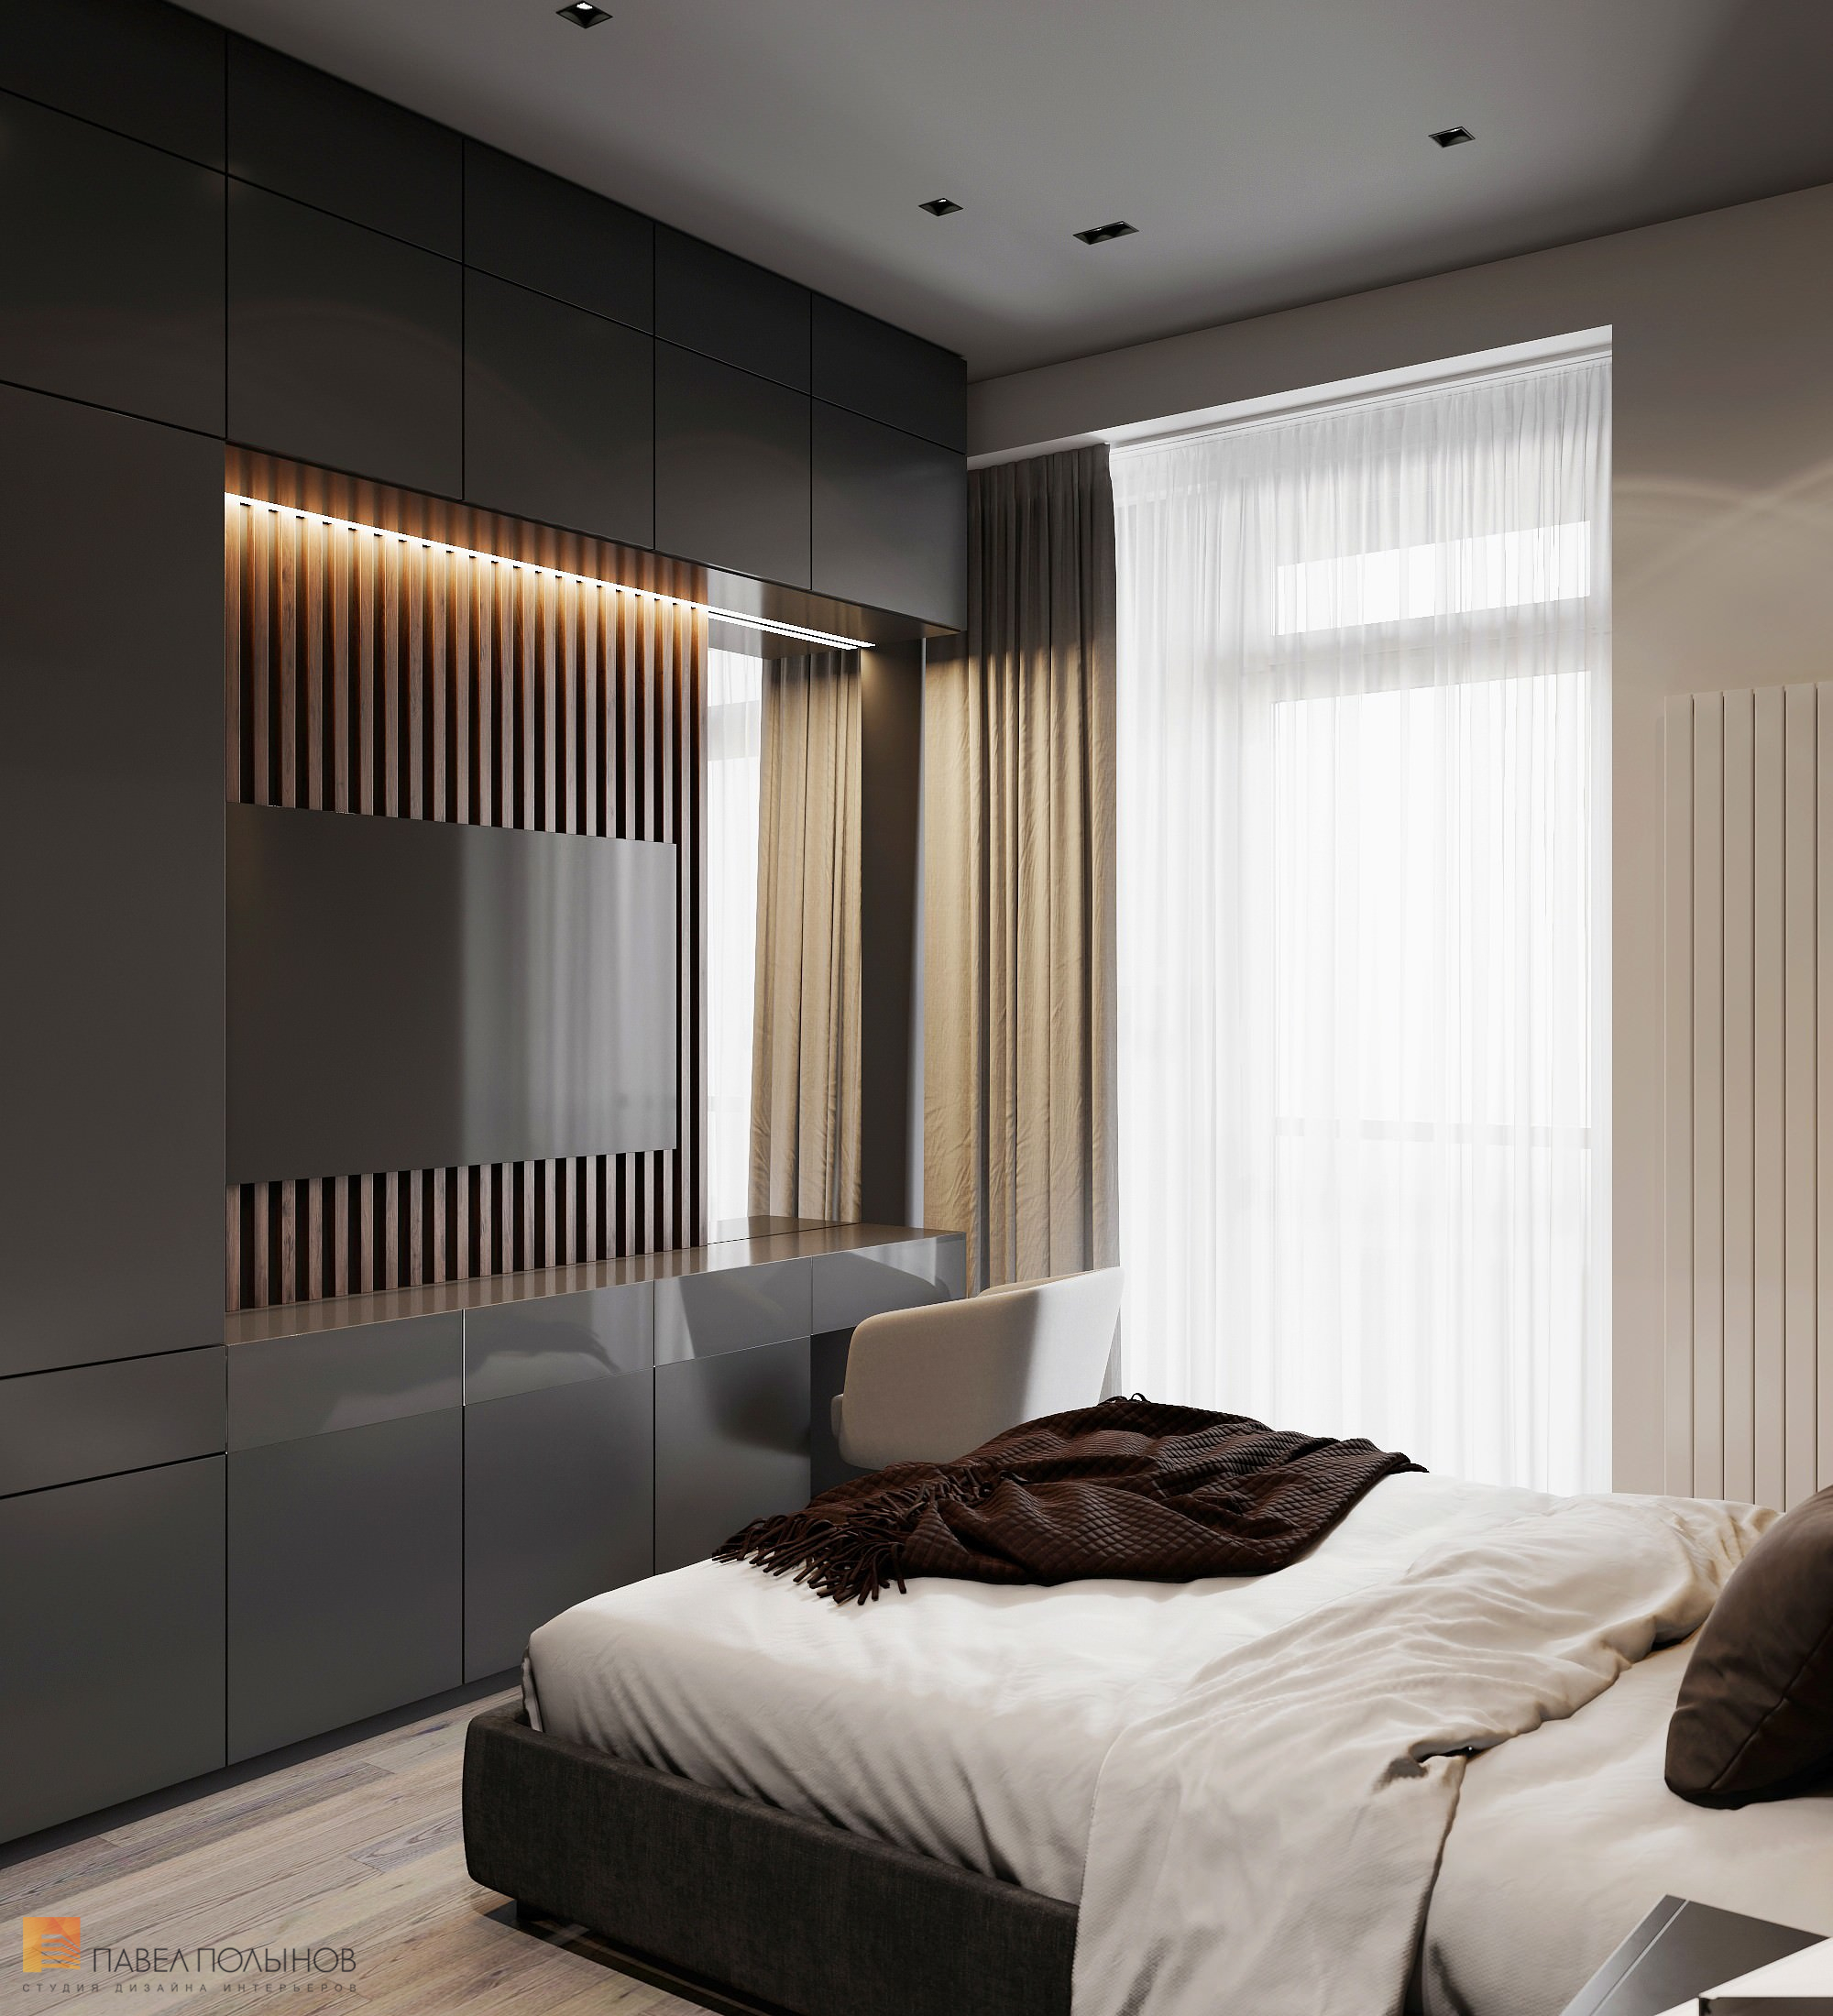 Фото дизайн спальни из проекта «Интерьер квартиры в современном стиле, ЖК «Символ», 64 кв.м.»